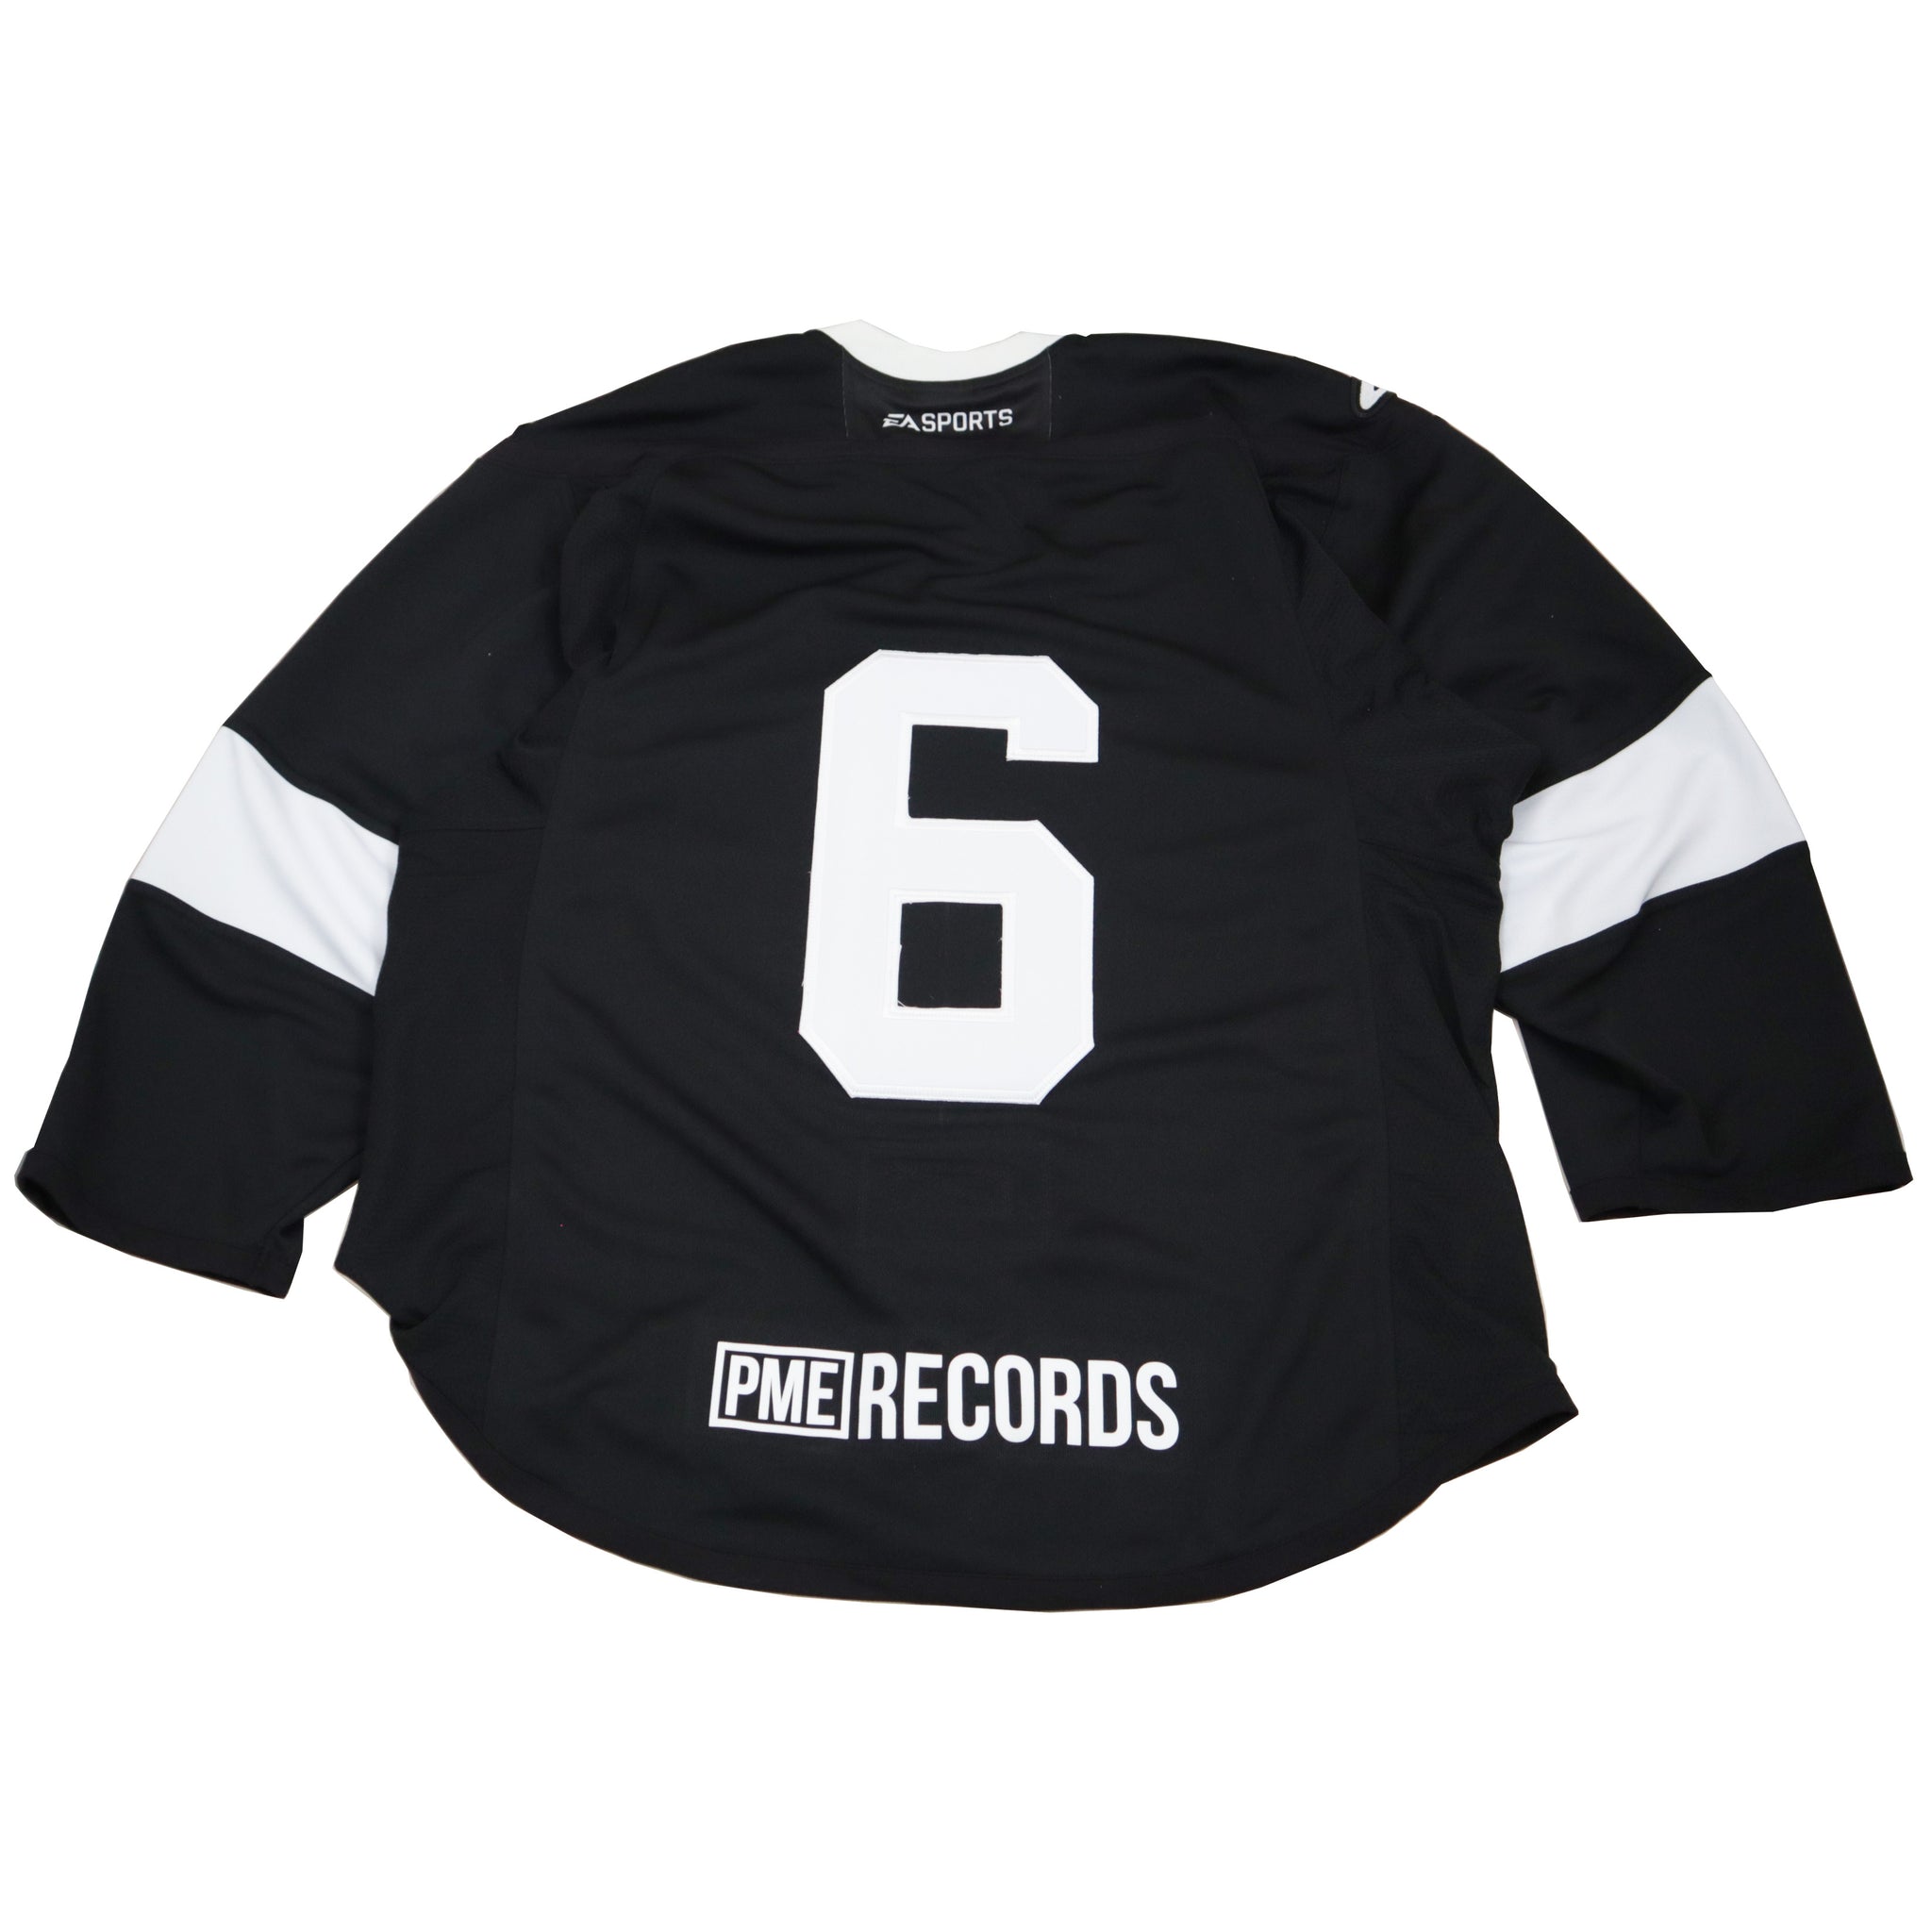 PME Records Hockey Jersey